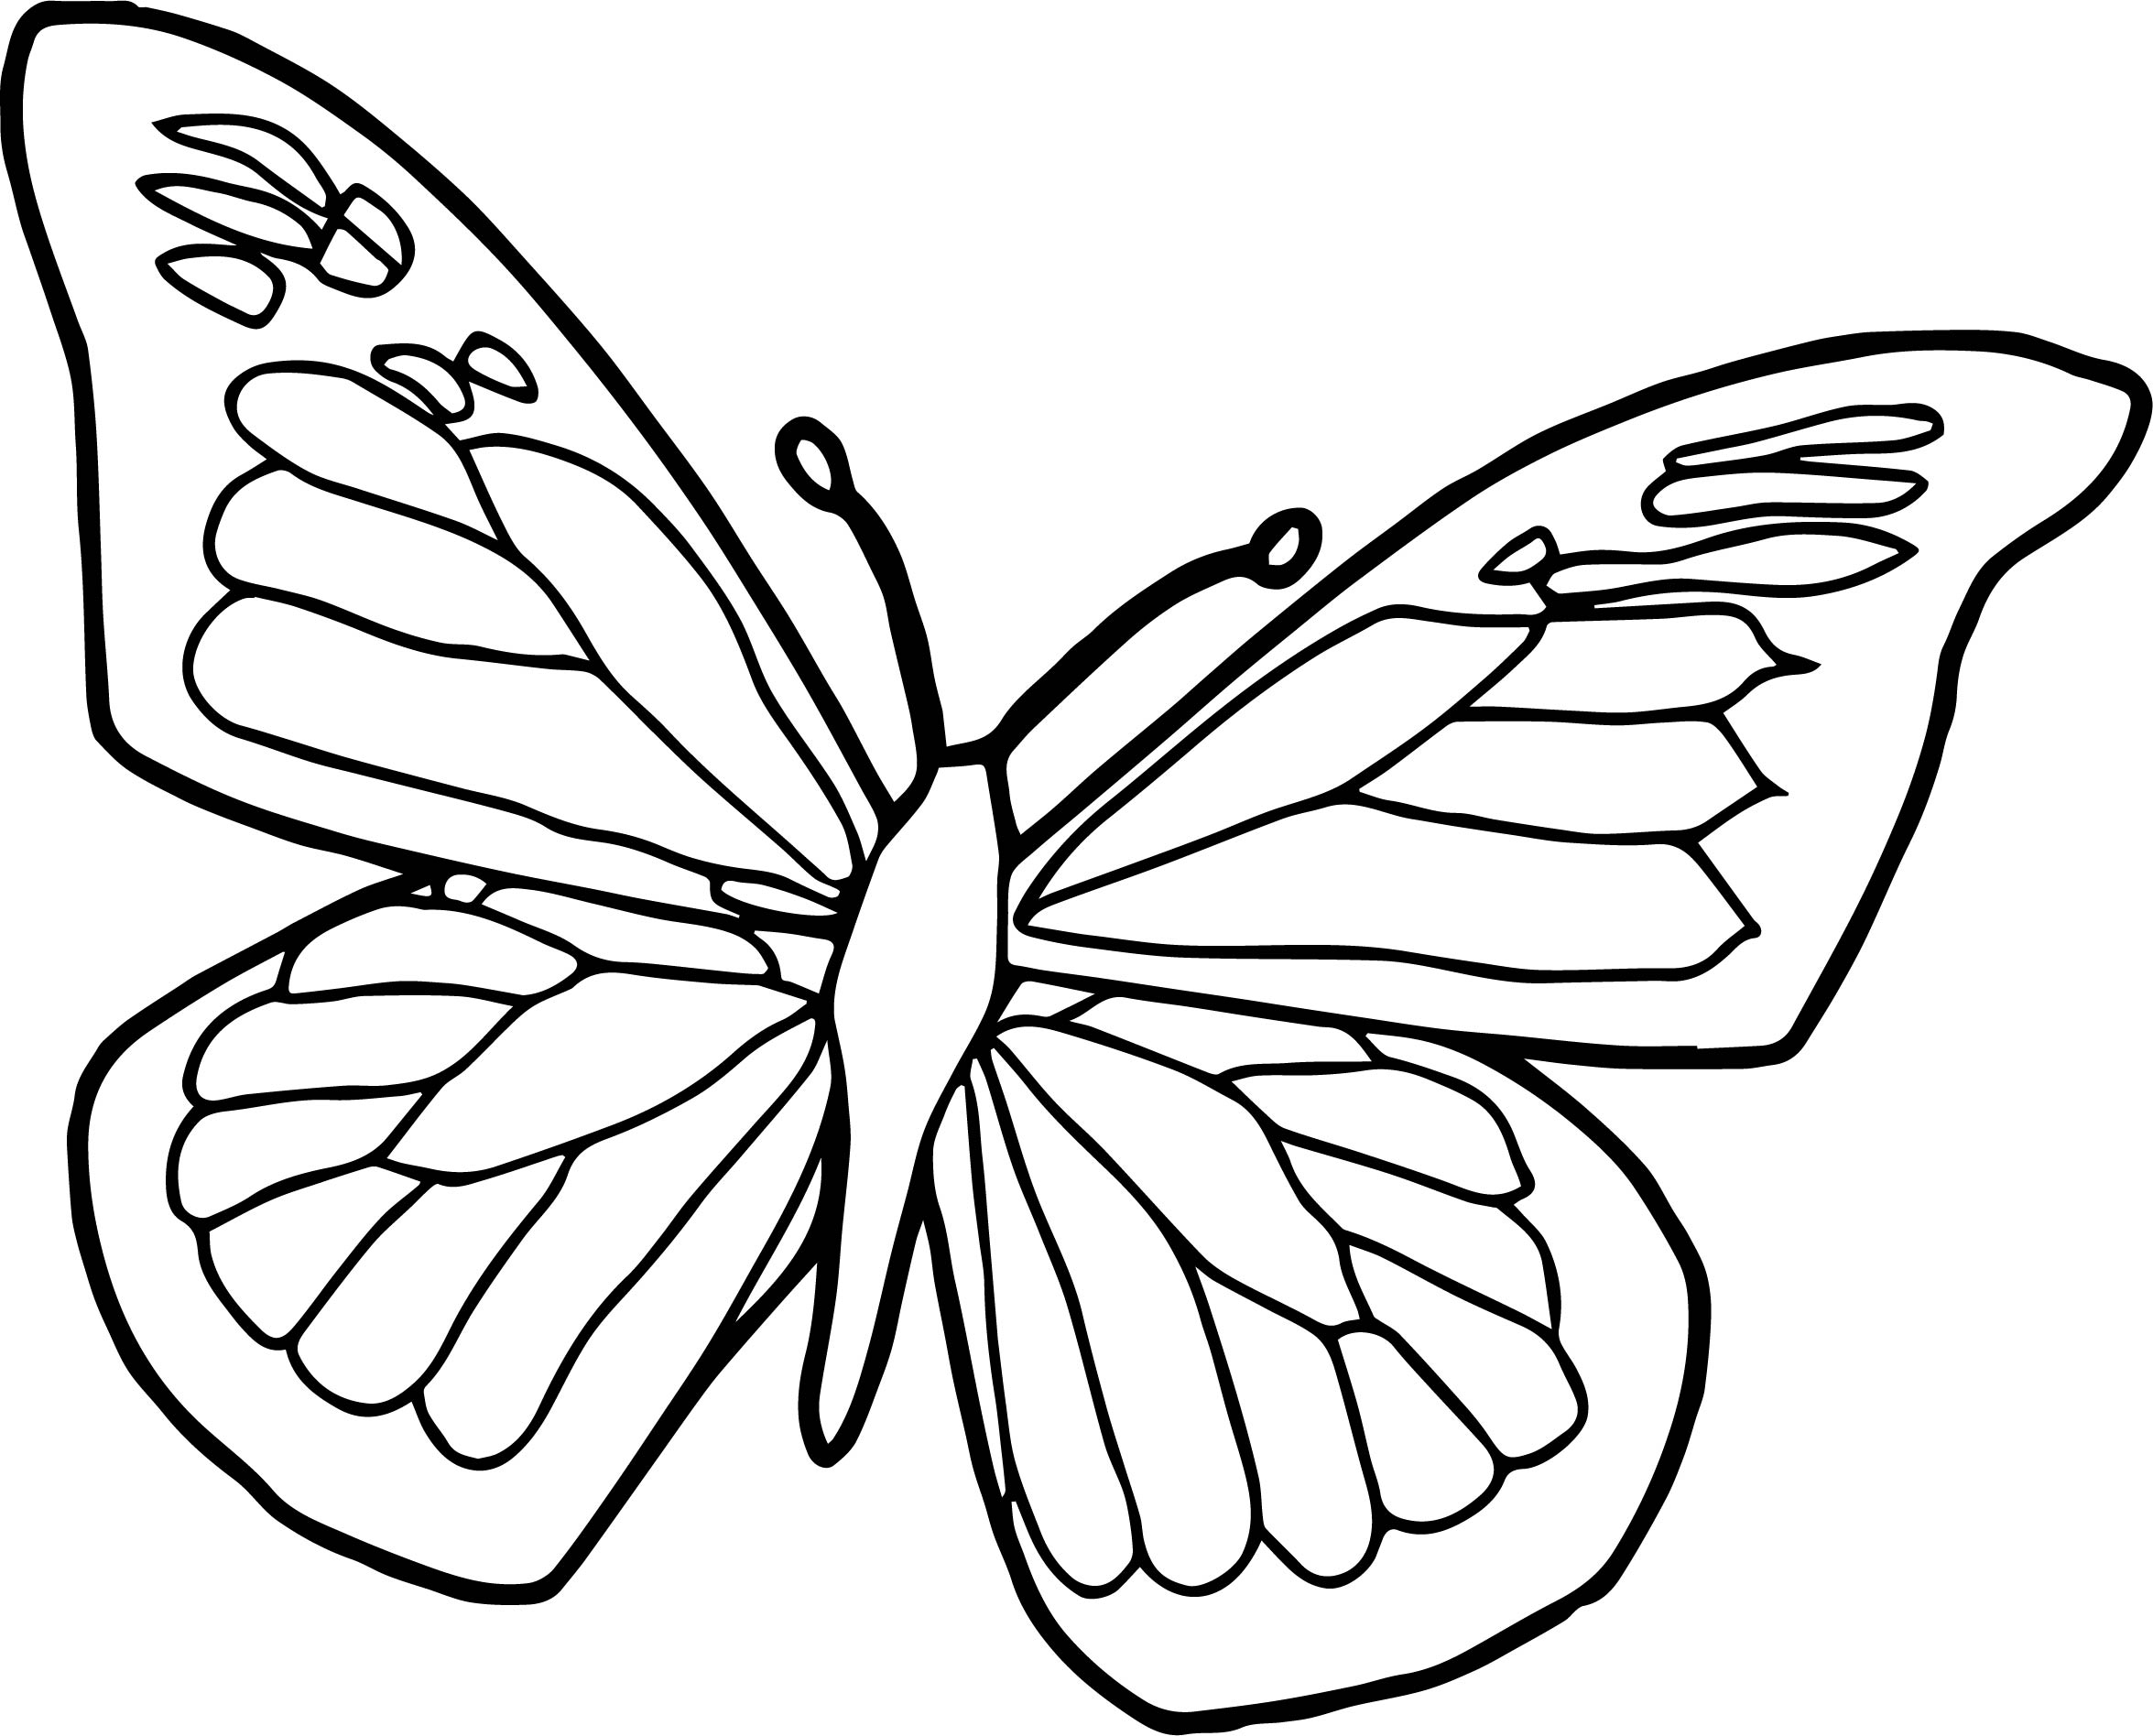 Tranh vẽ tô màu con bướm đẹp nhất cho bé